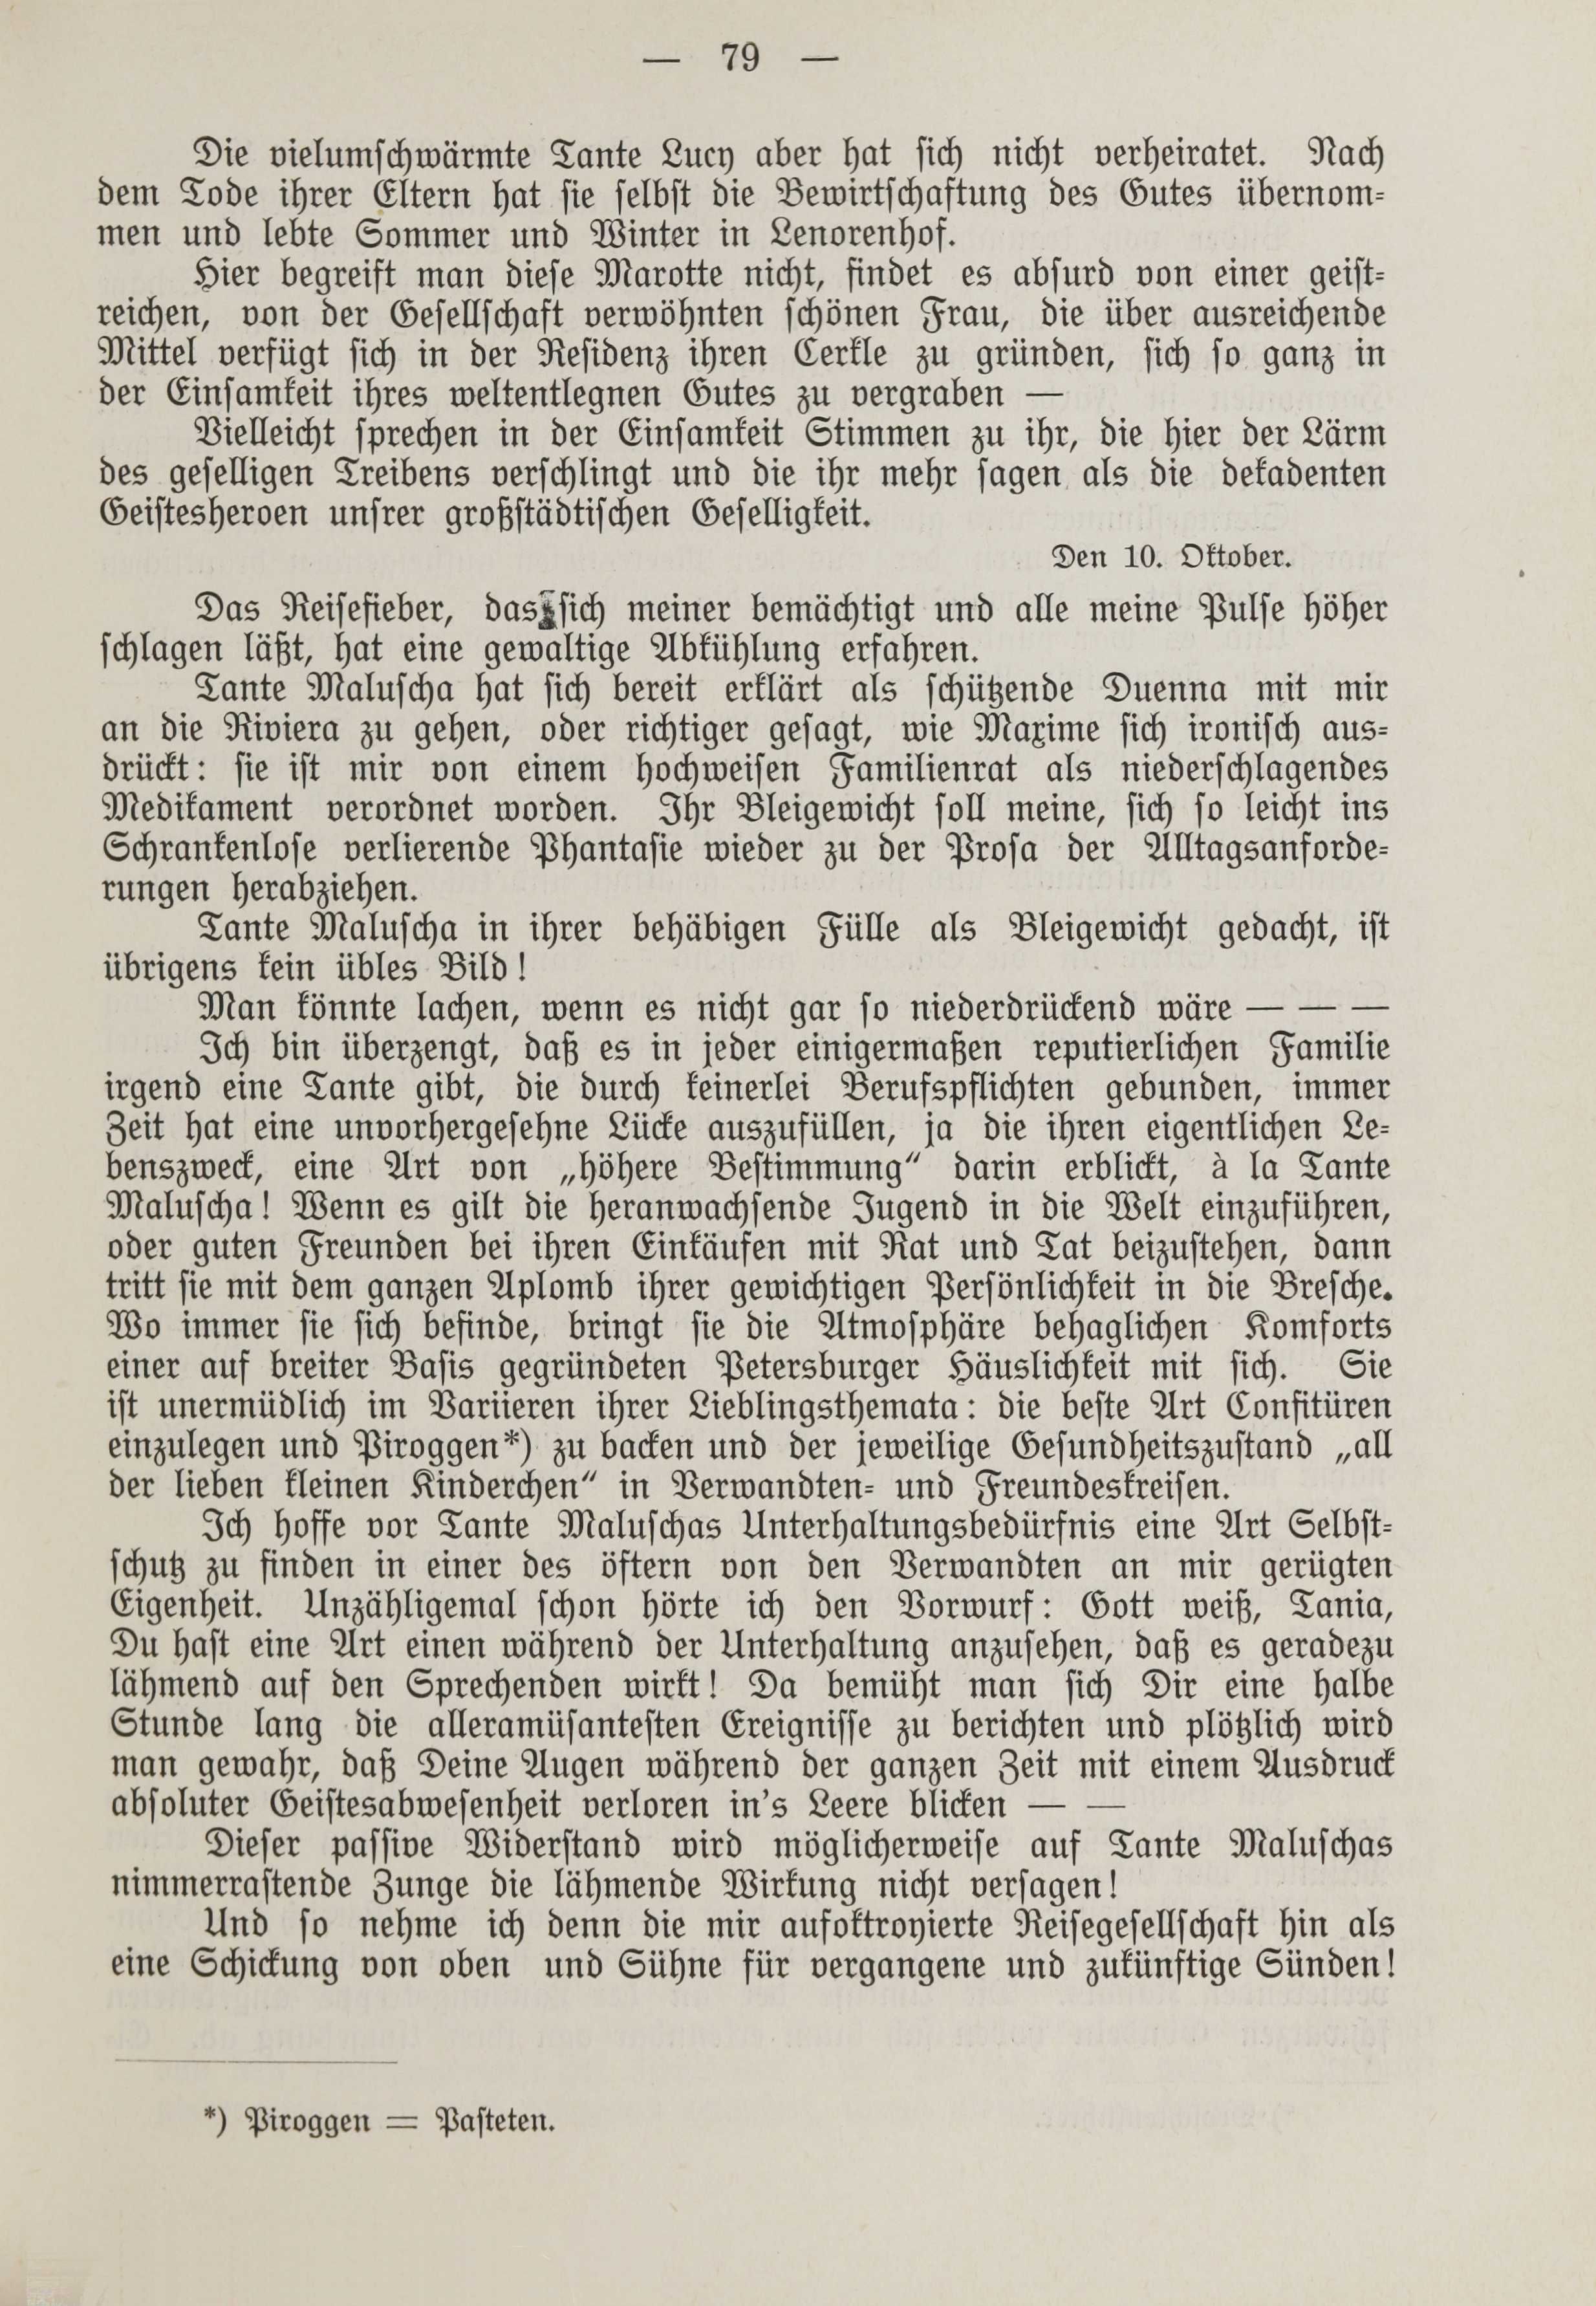 Deutsche Monatsschrift für Russland [1] (1912) | 86. (79) Основной текст